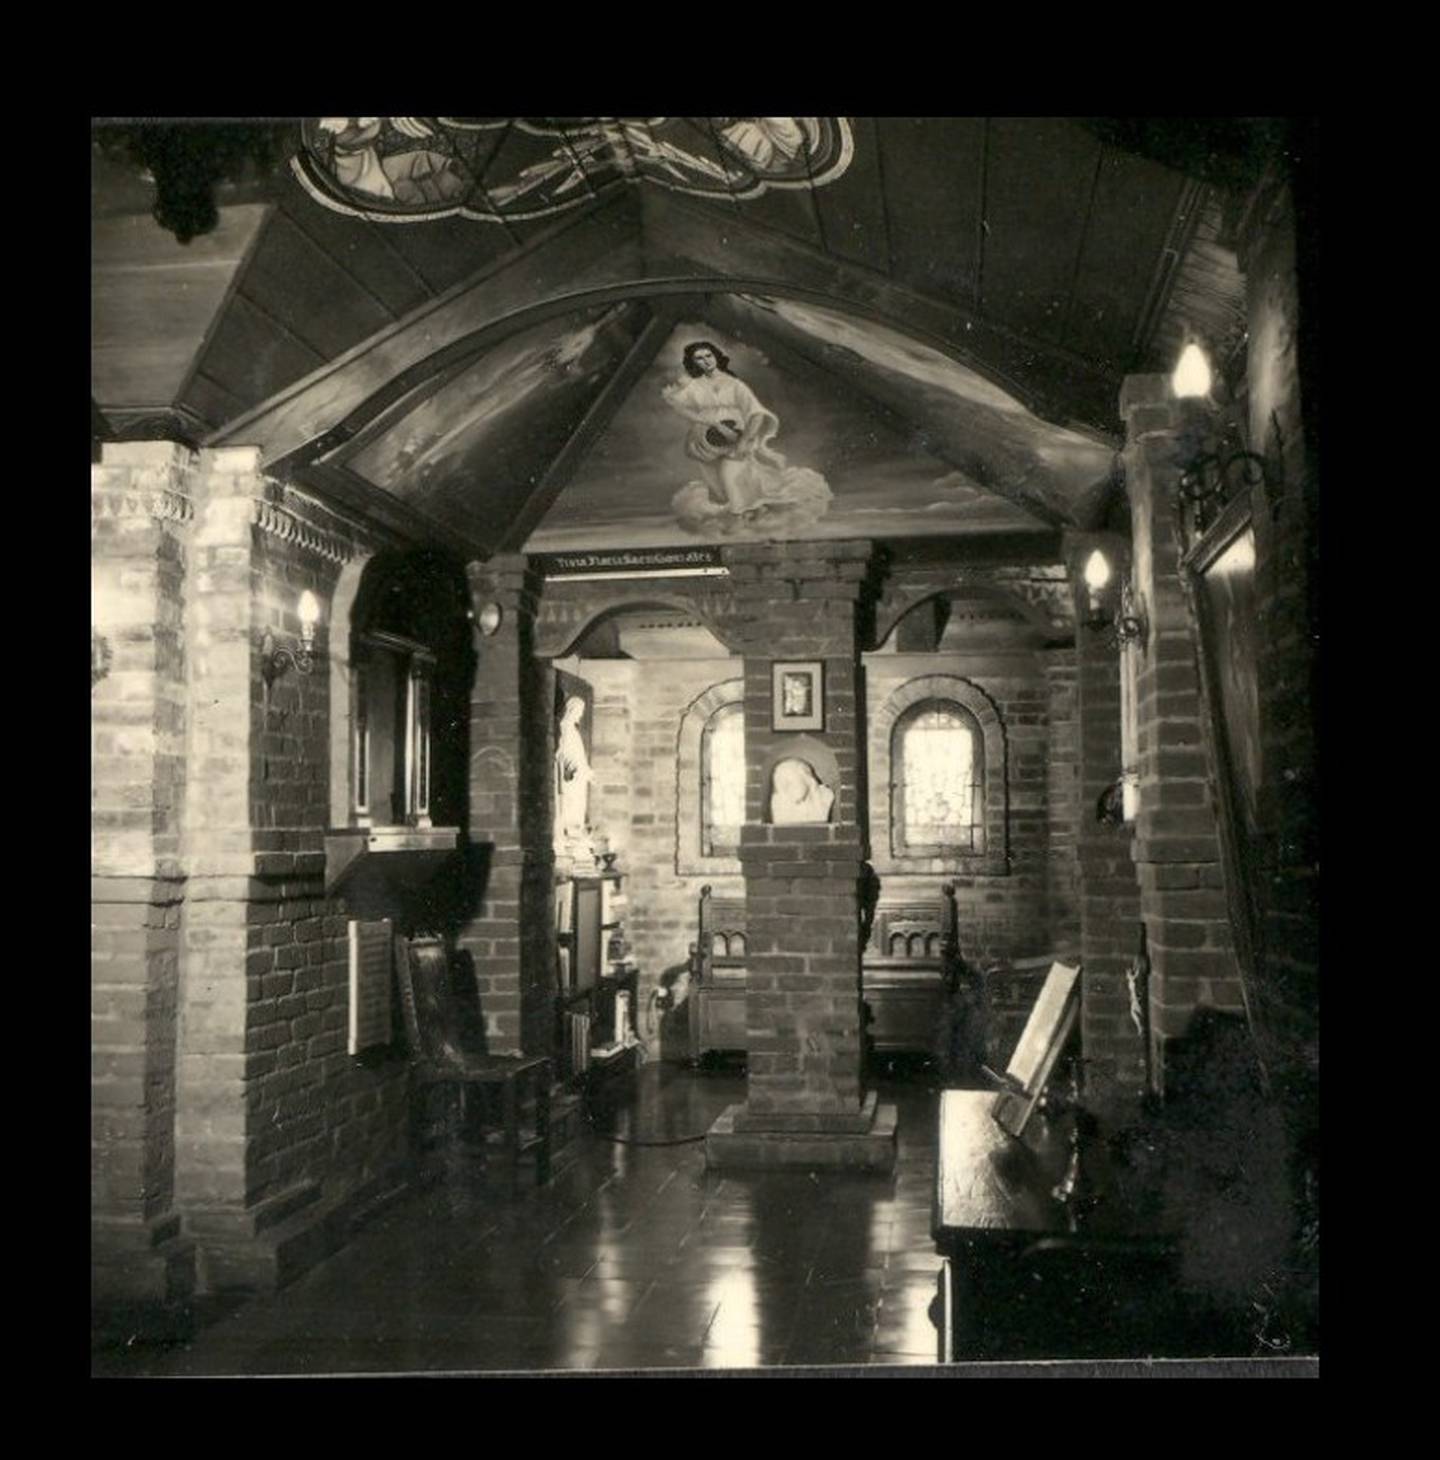 Esta era la capilla de la Casa González Feo en la década de 1940.

Fotografía: Cortesía